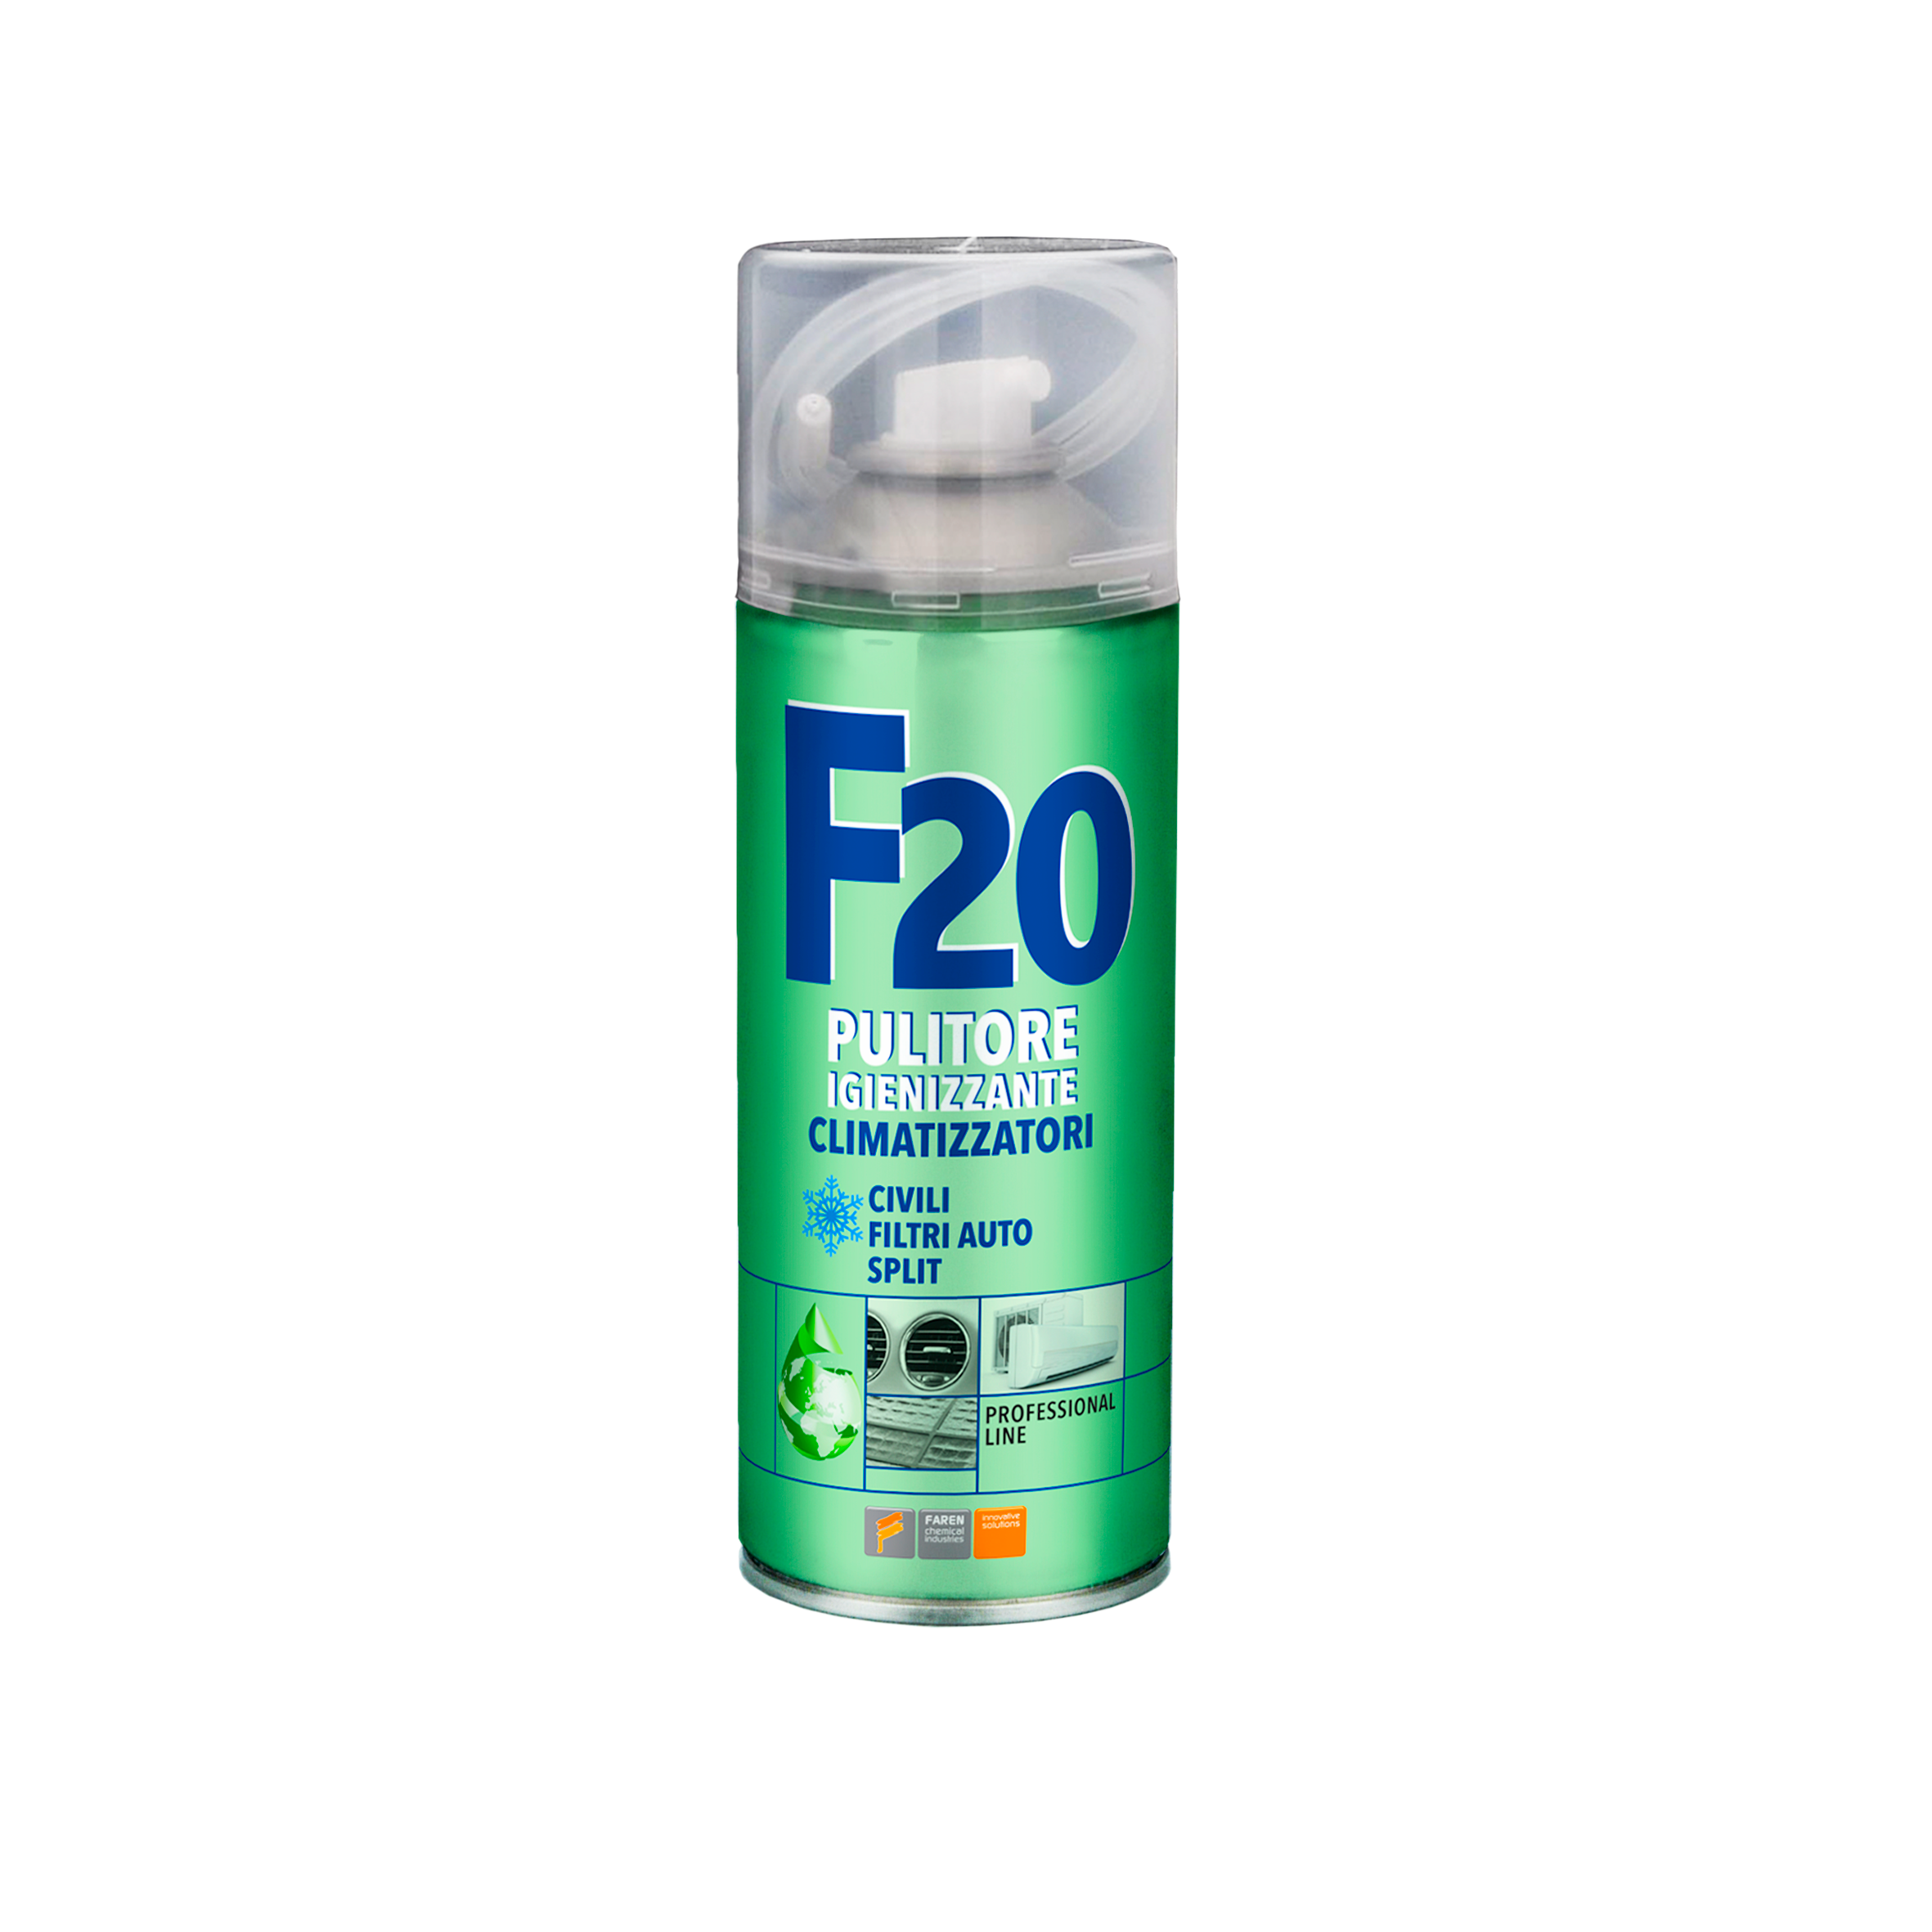 Spray igienizzante disinfettante per condizionatori e climatizzatori F